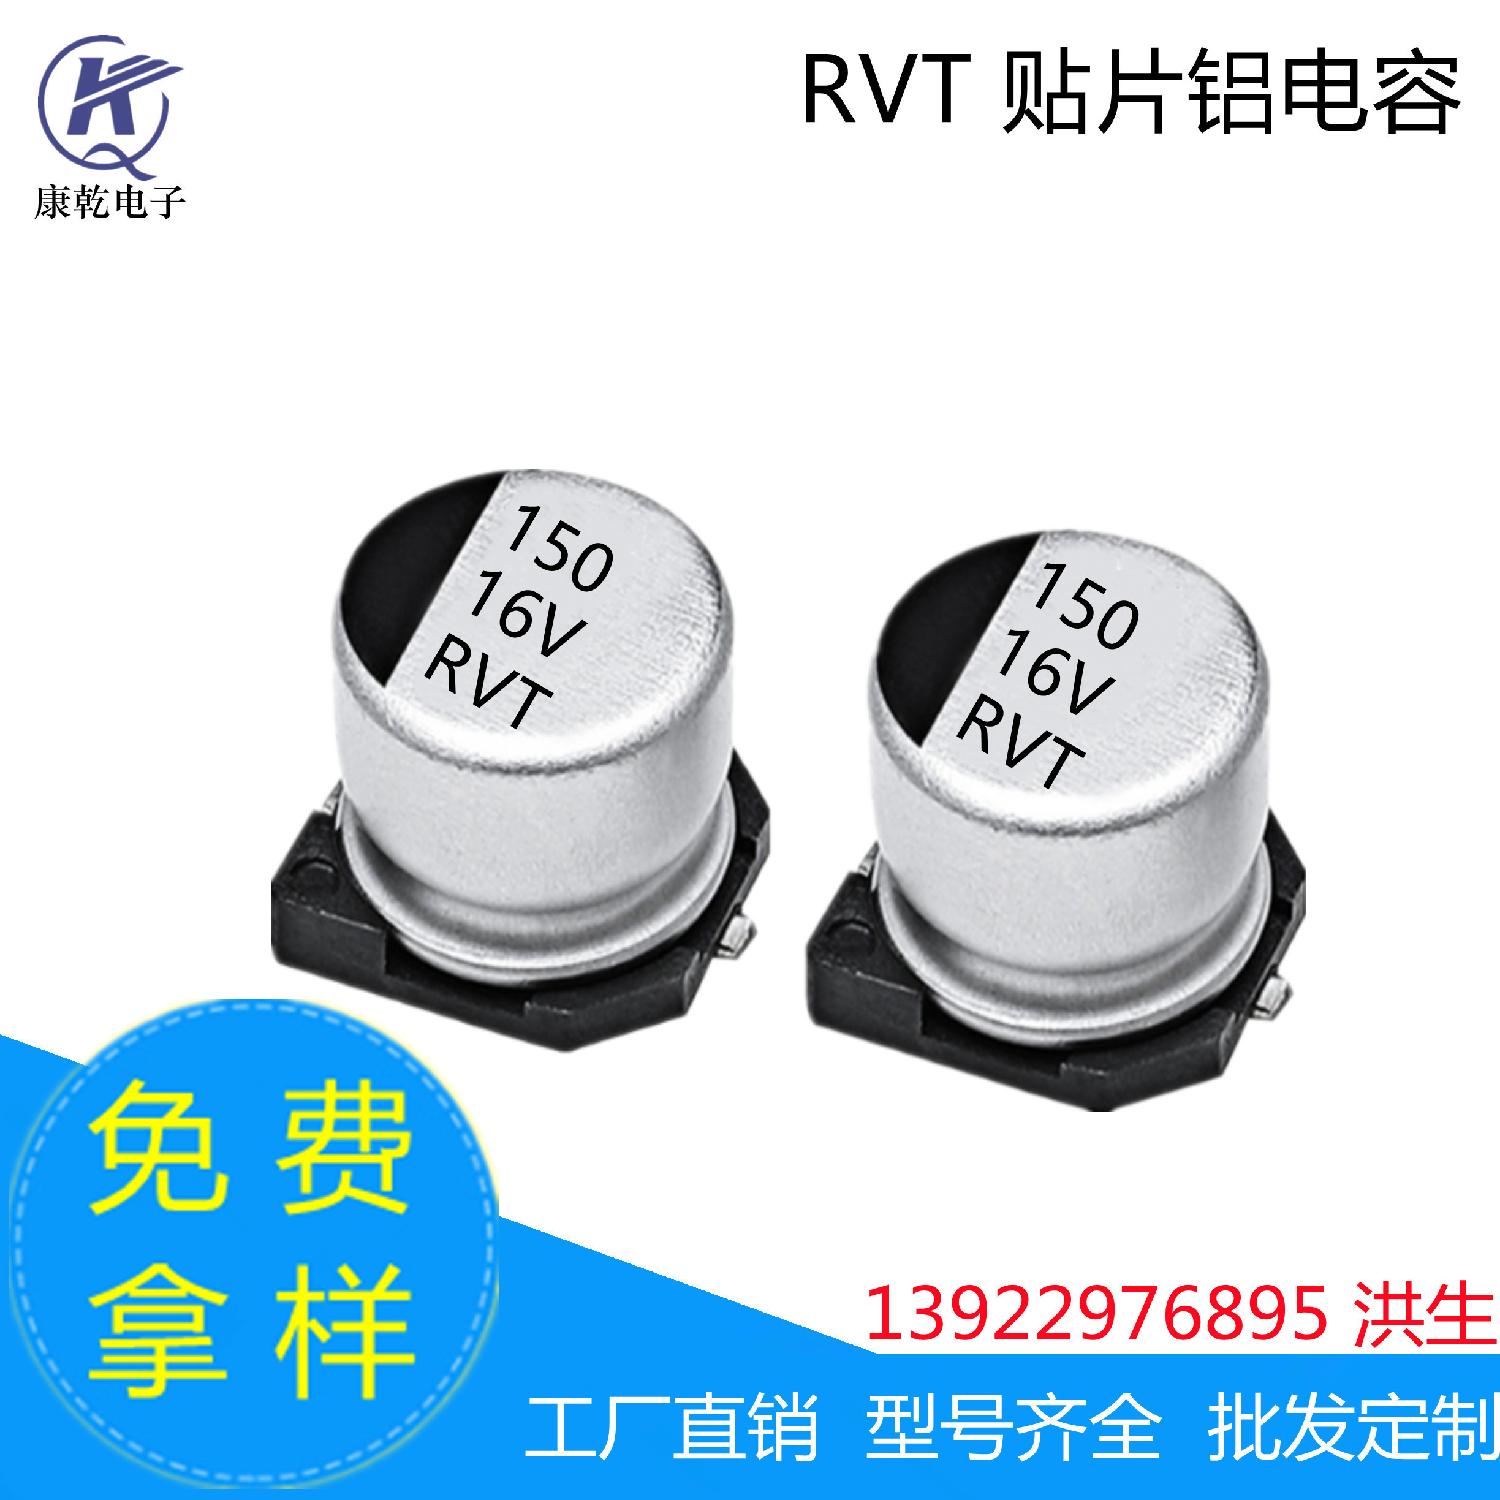 厂家现货RVT贴片铝电解电容器150uF 16V 6.3*7.7mm 高品质 耐高温 150uF 16V